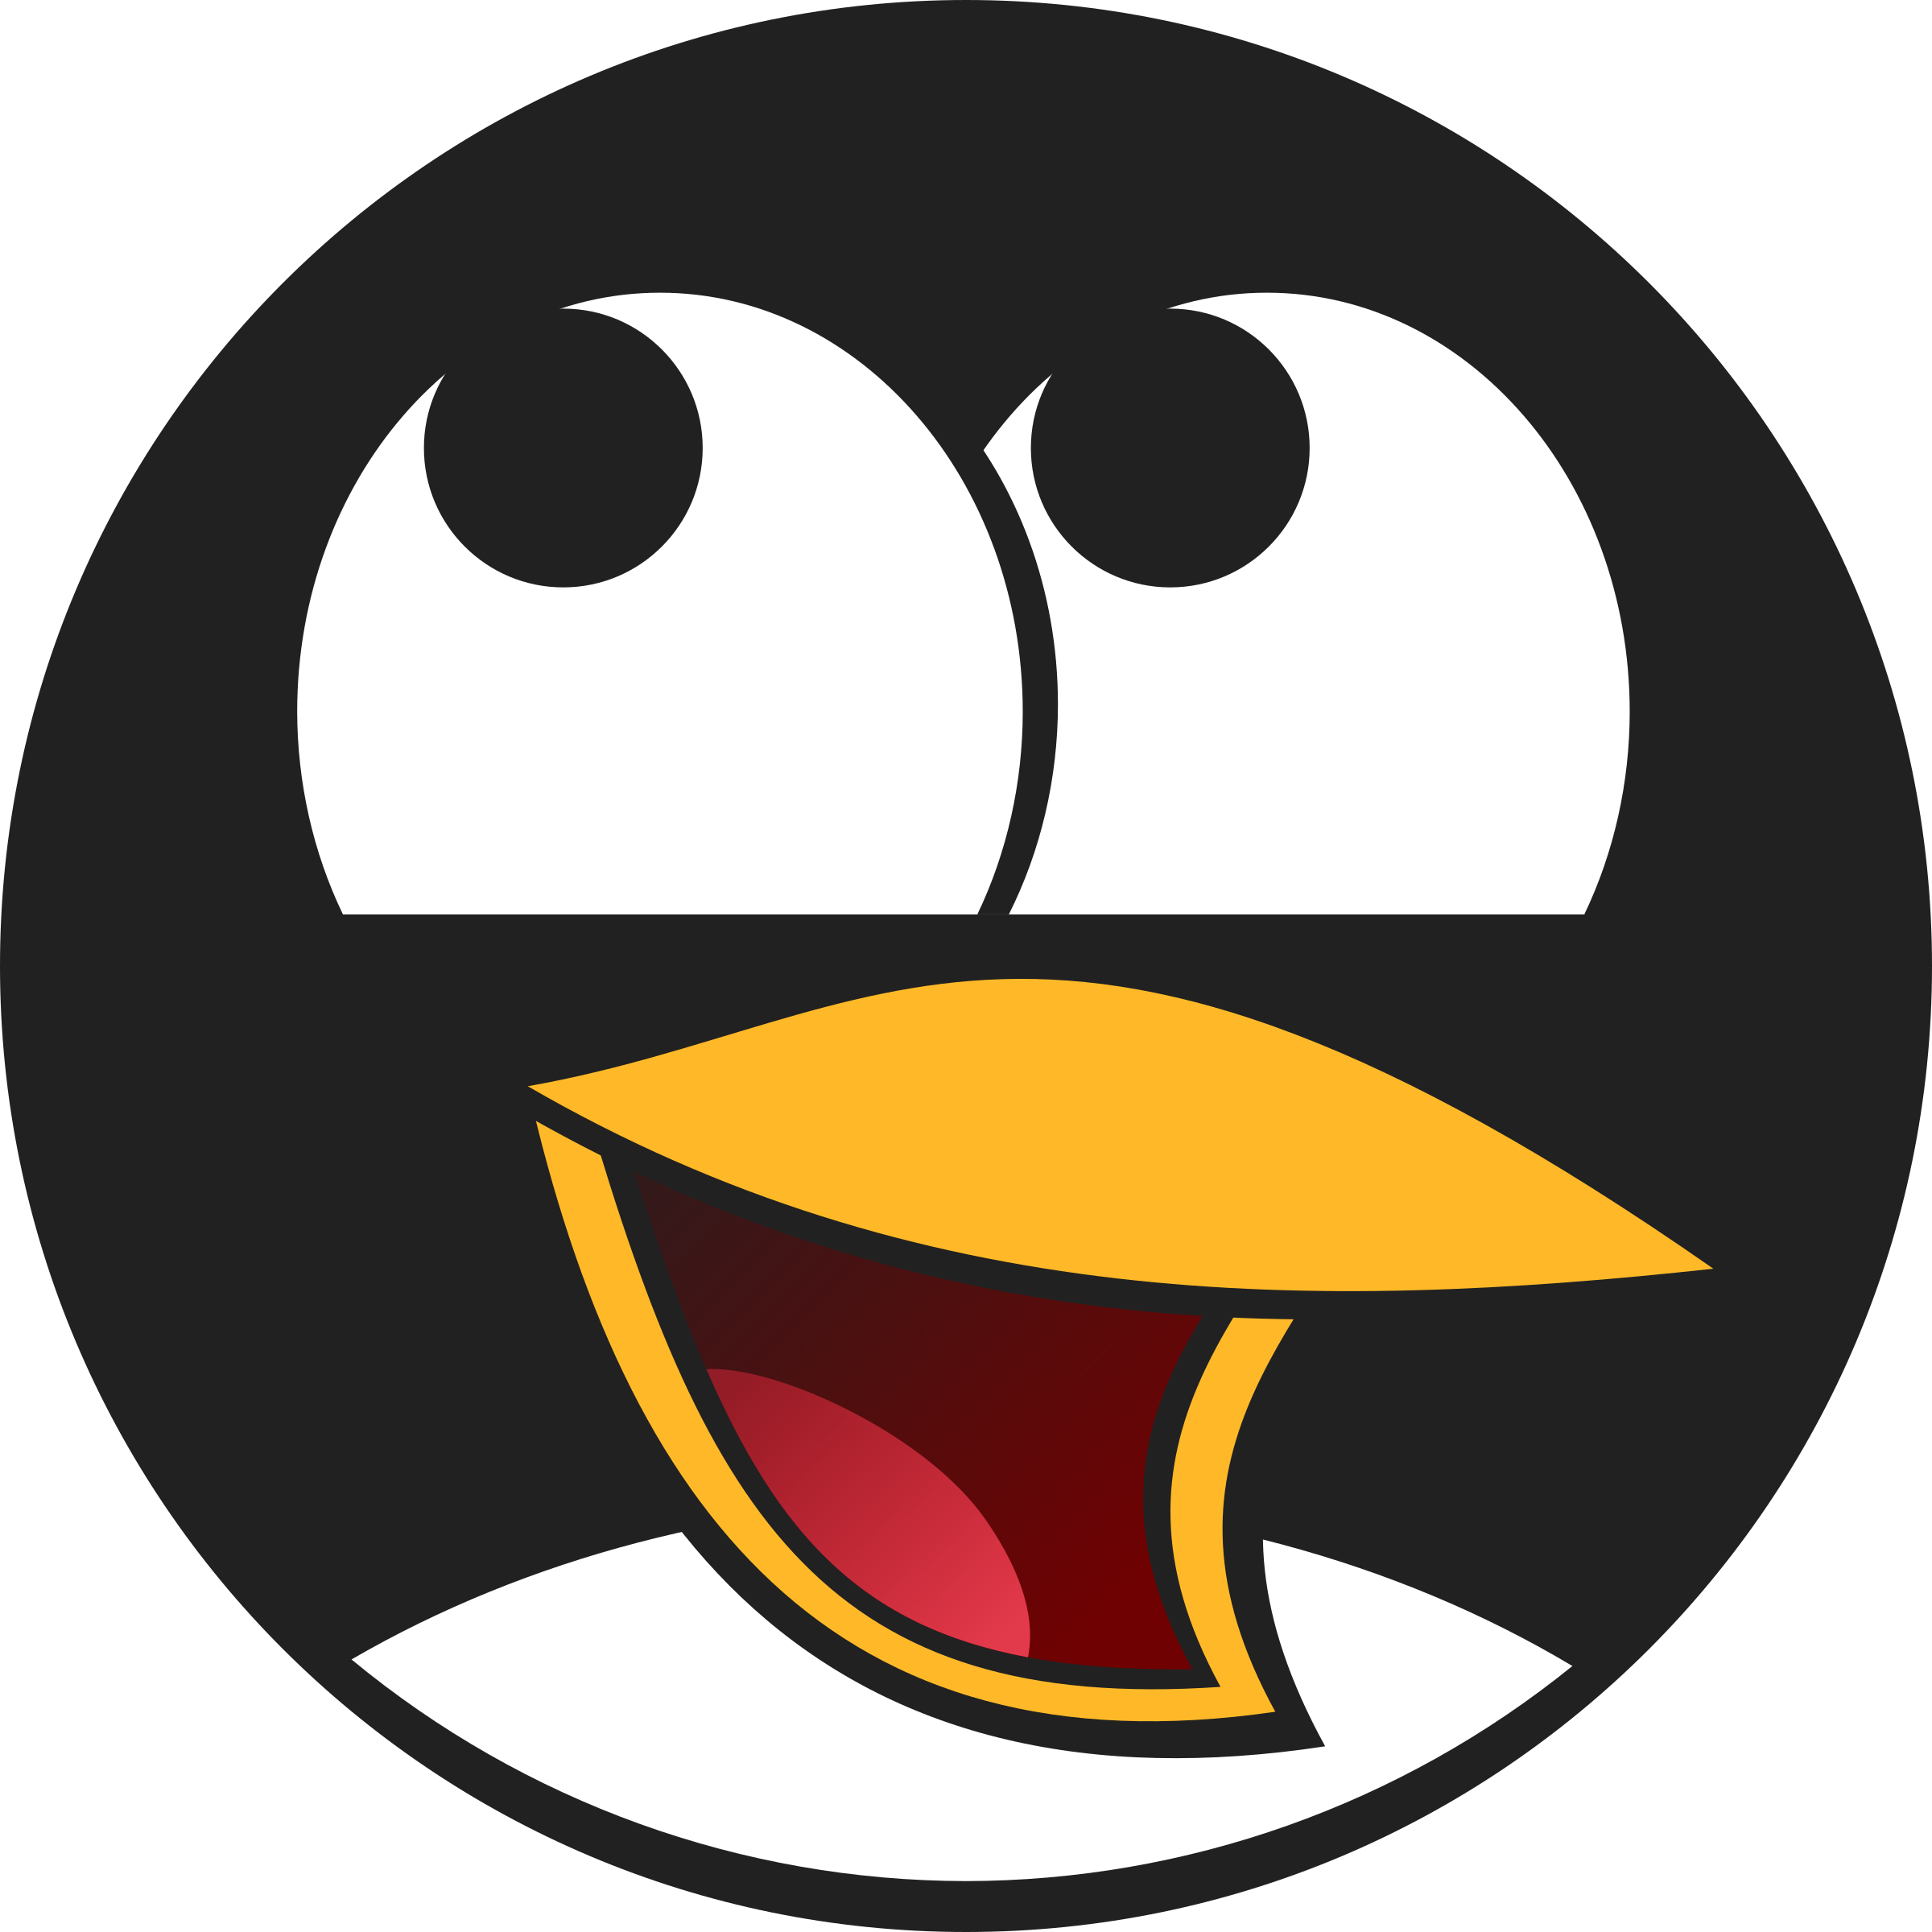 Tux Racer Linux Penguin Free Clipart HQ PNG Image